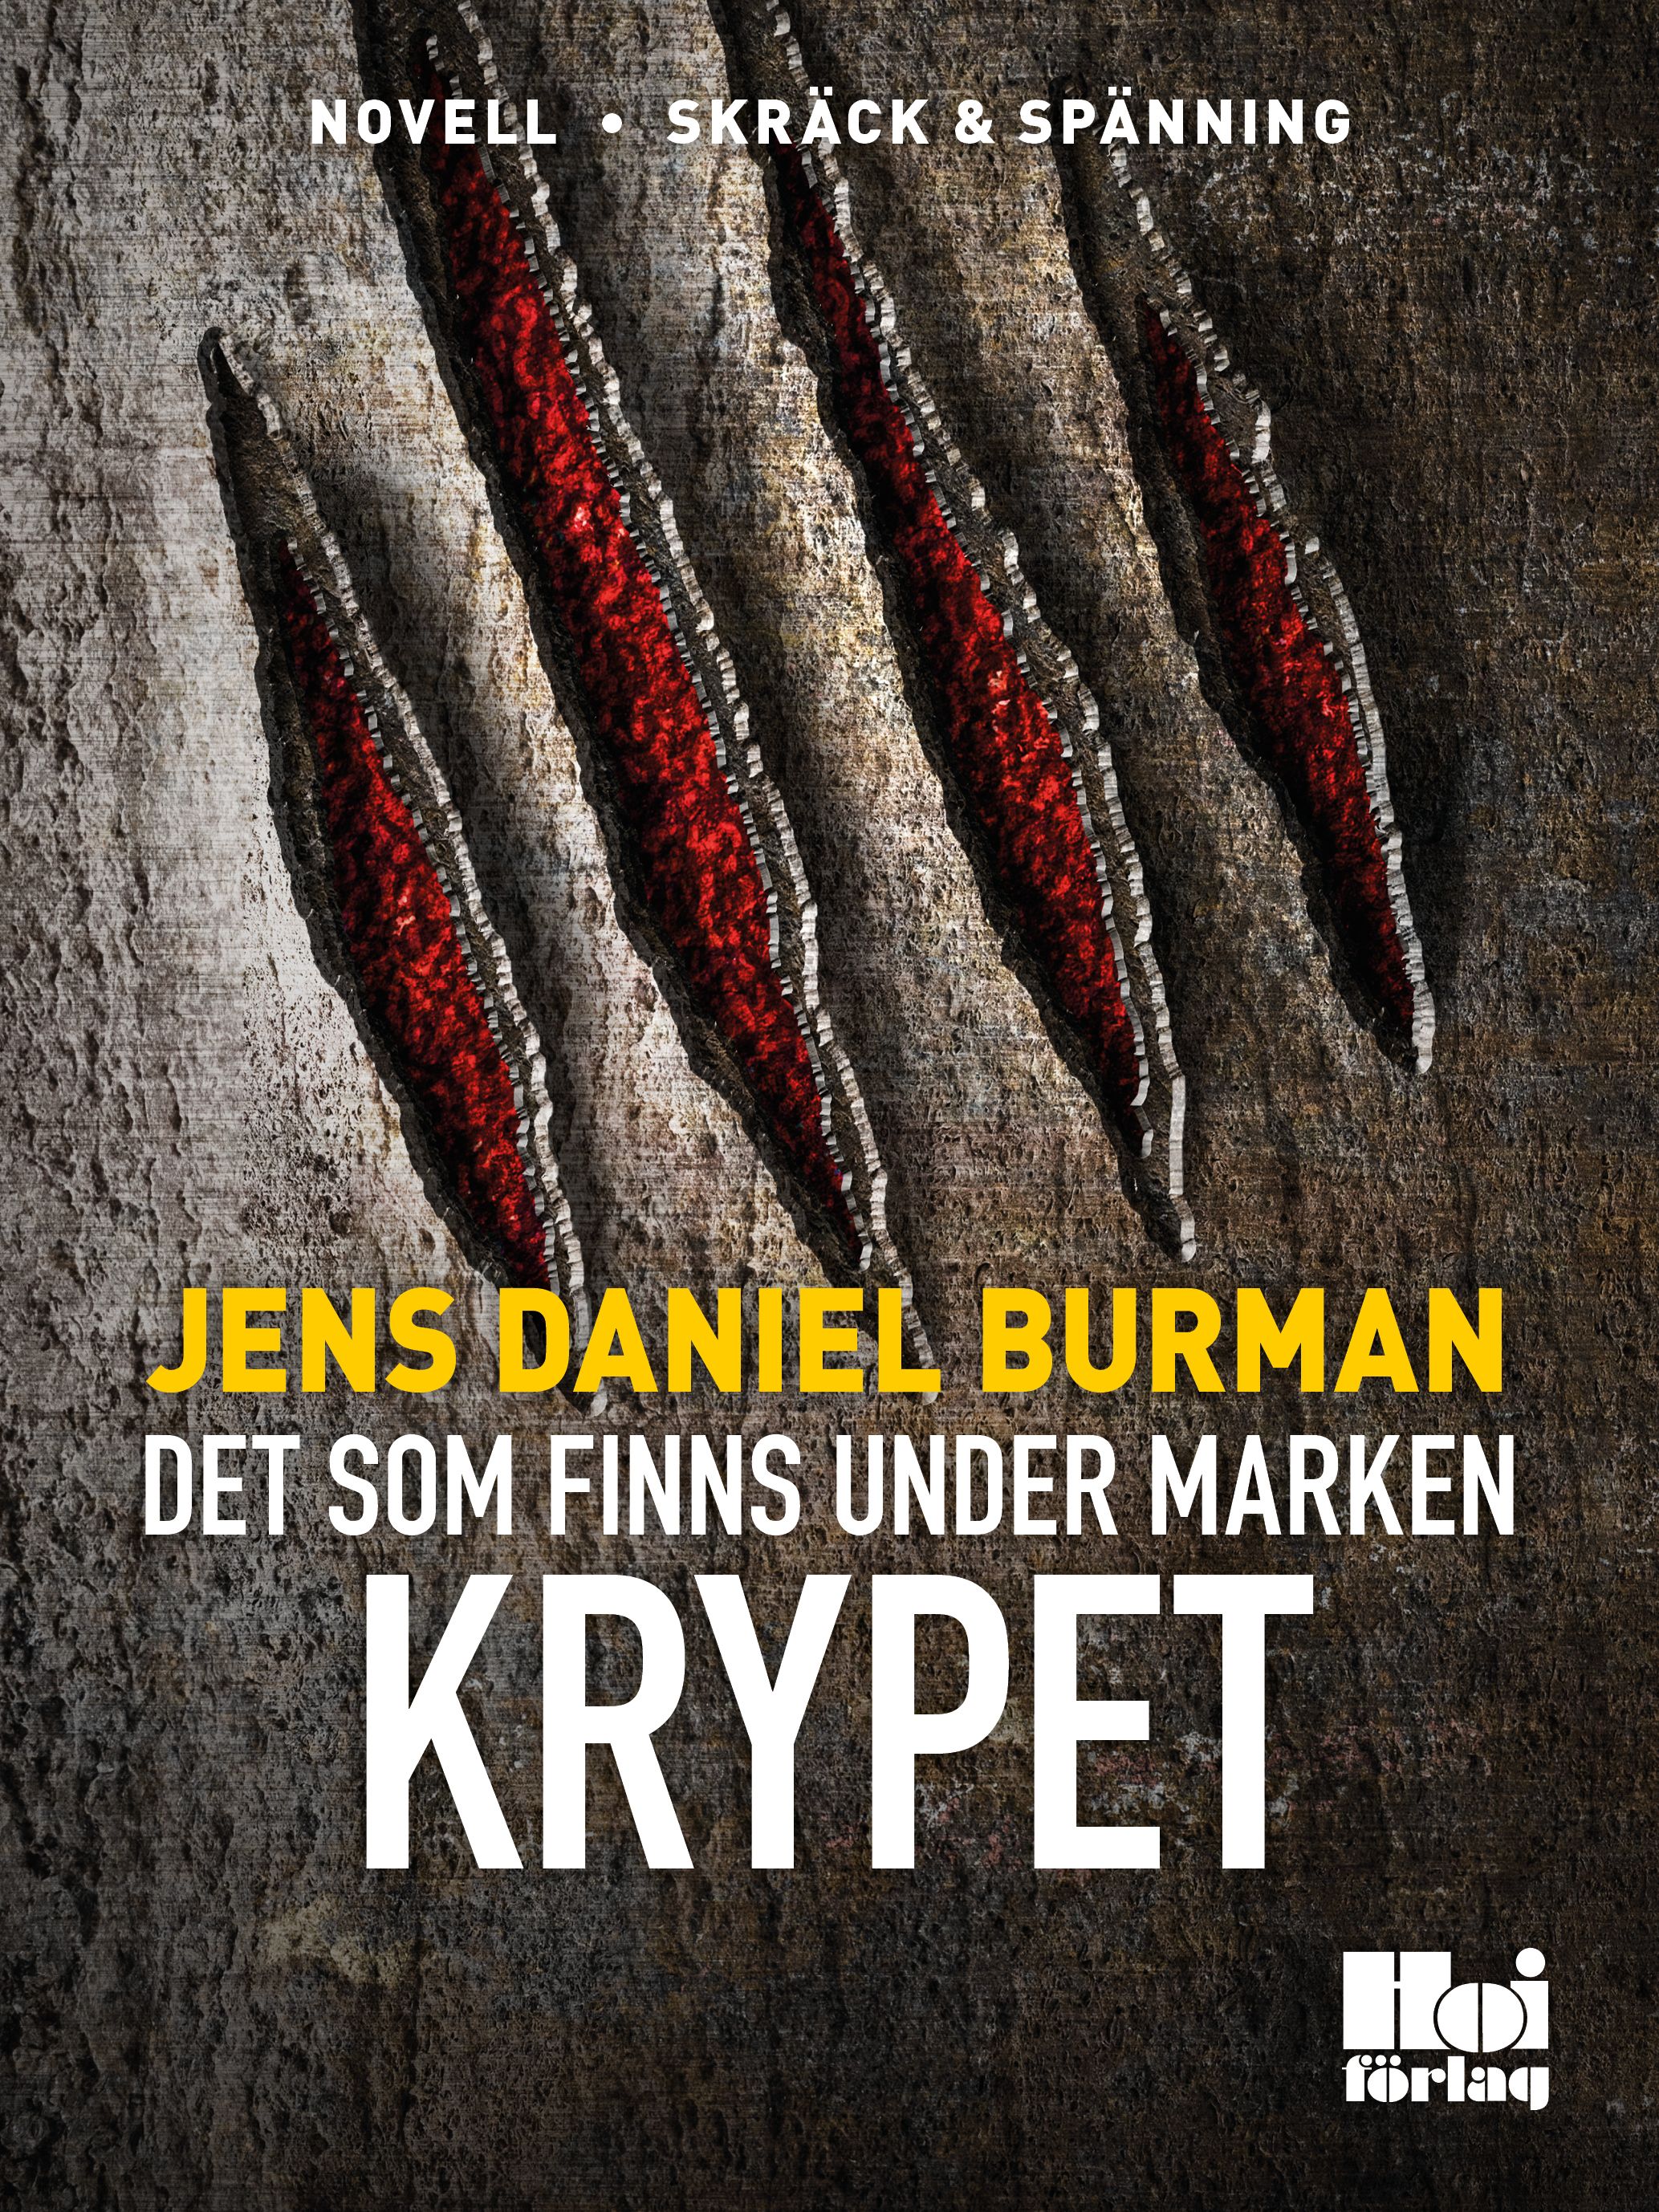 Det som finns under marken / Krypet, eBook by Jens Daniel Burman